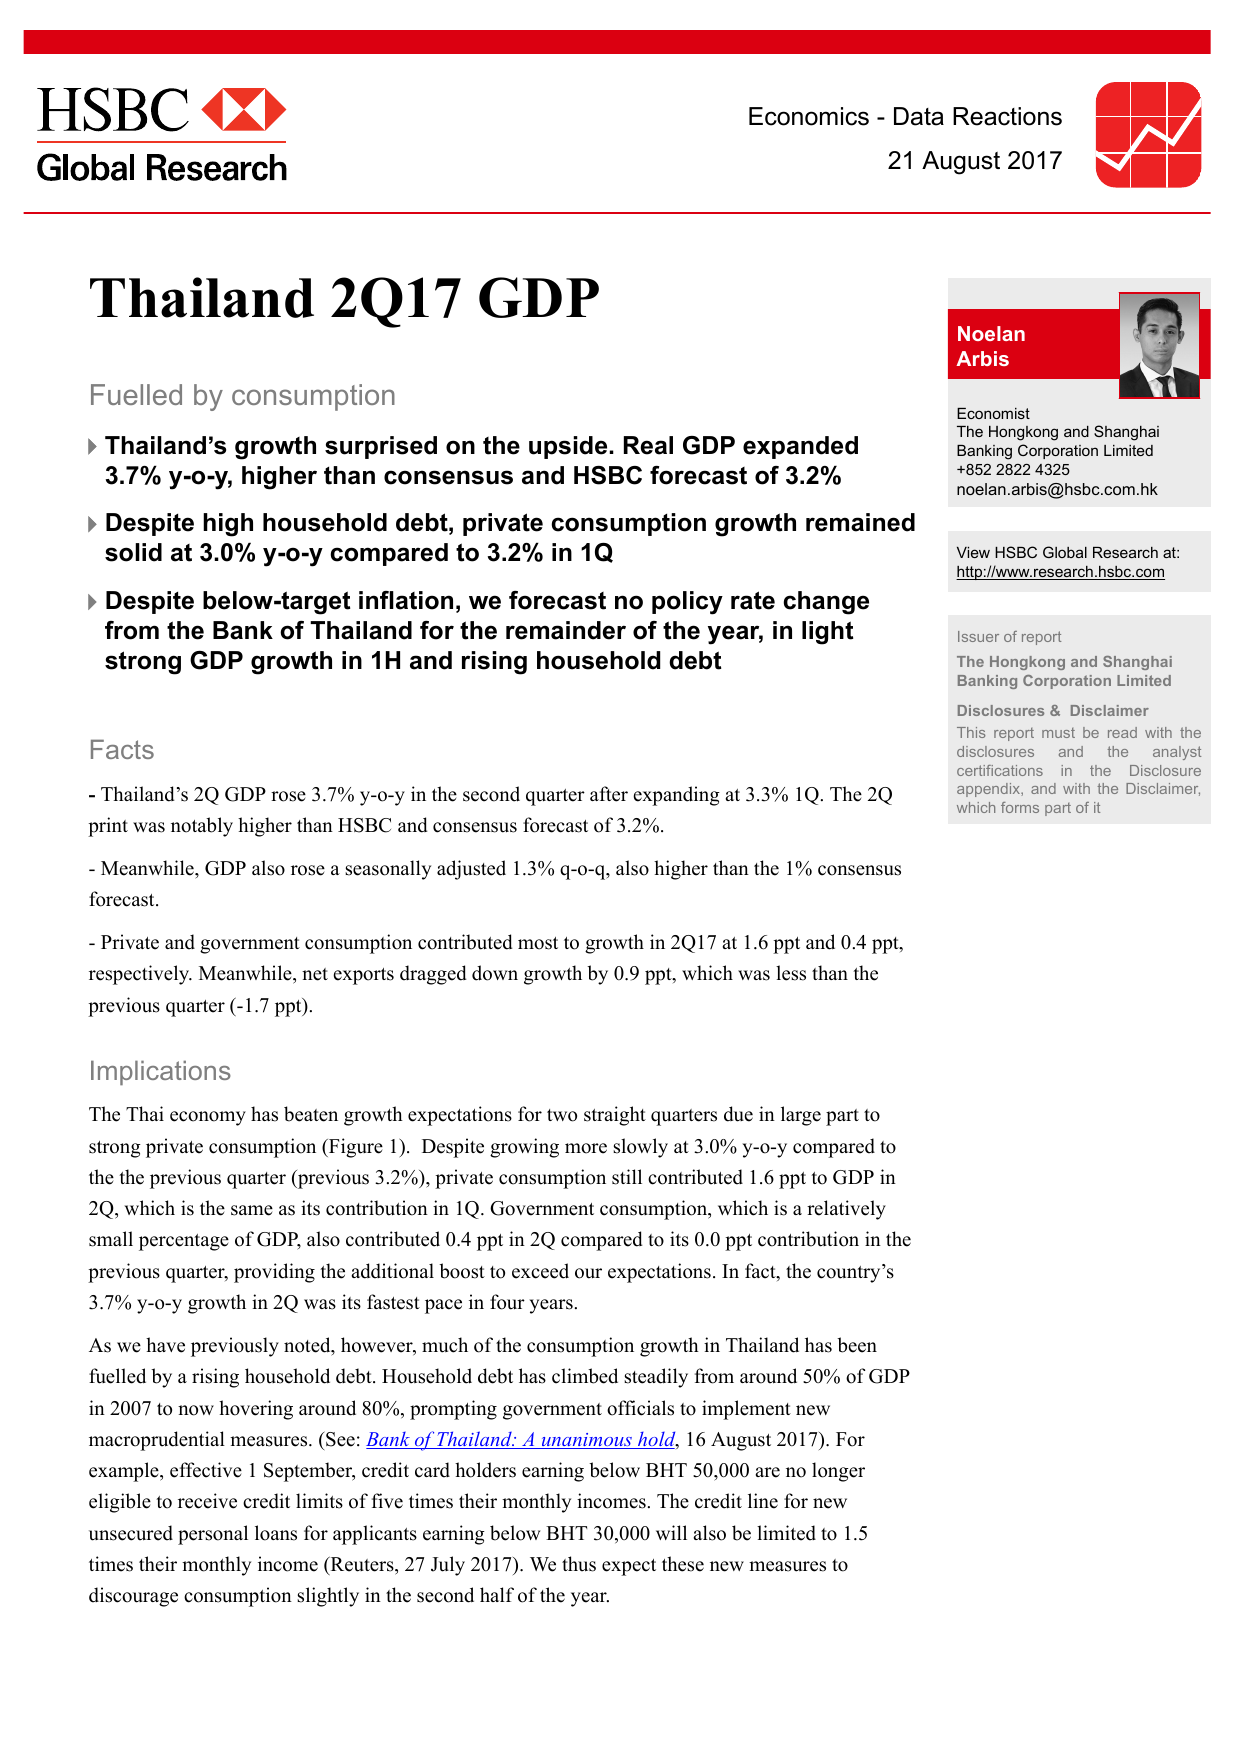 汇丰银行-东南亚-泰国宏观经济-泰国二季度国内生产总值受消费推动增长超预期-20170821-Thailand 2Q17 GDP Fuelled by consumption-20170821-HSBC